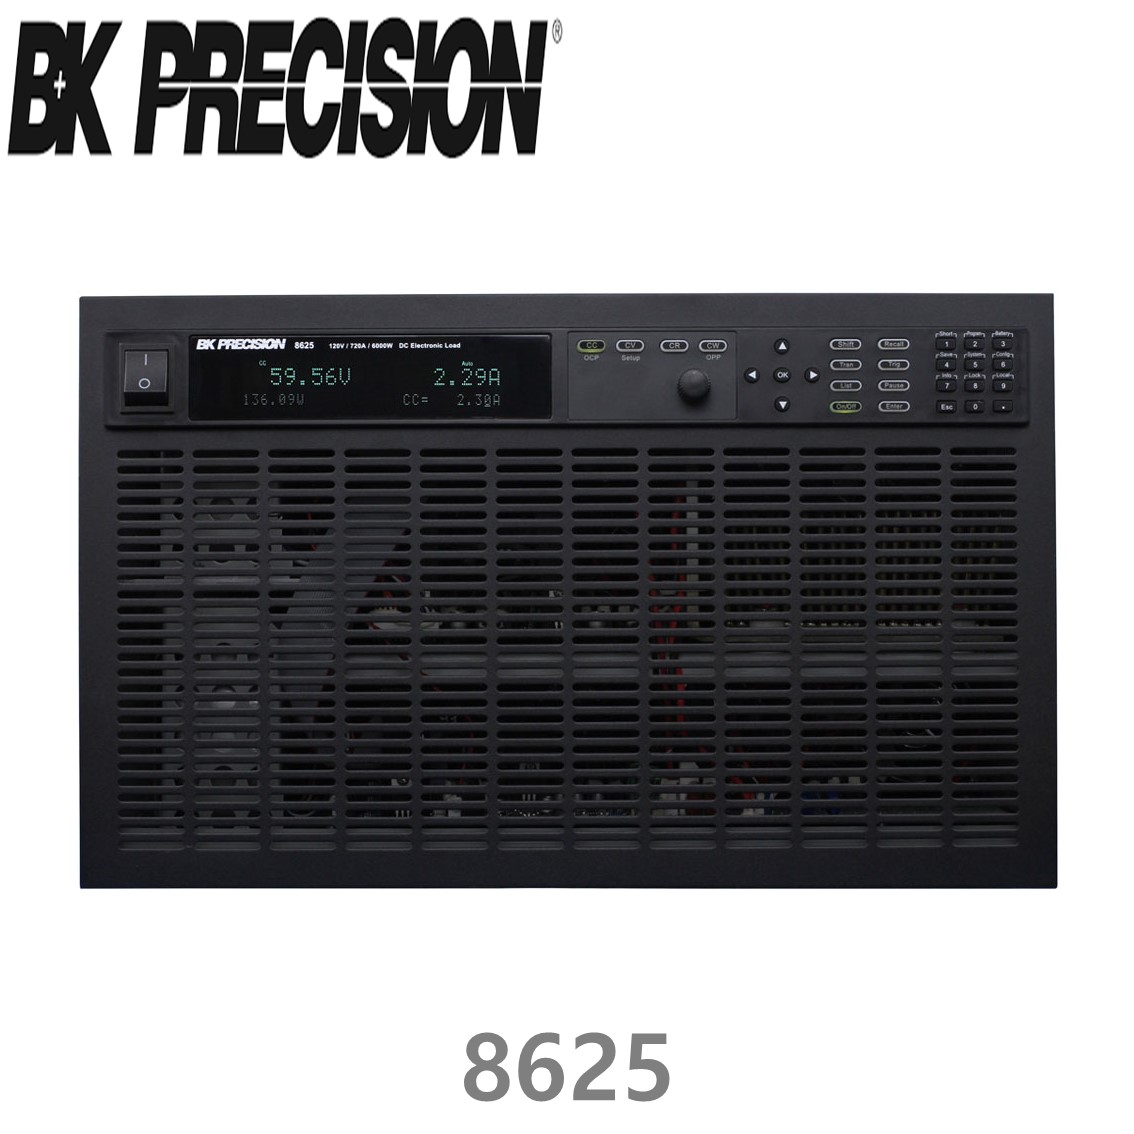 [ BK PRECISION ] BK 8625, 120V/720A(6000W), DC Electronic Load, DC전자부하기, B&K 8625